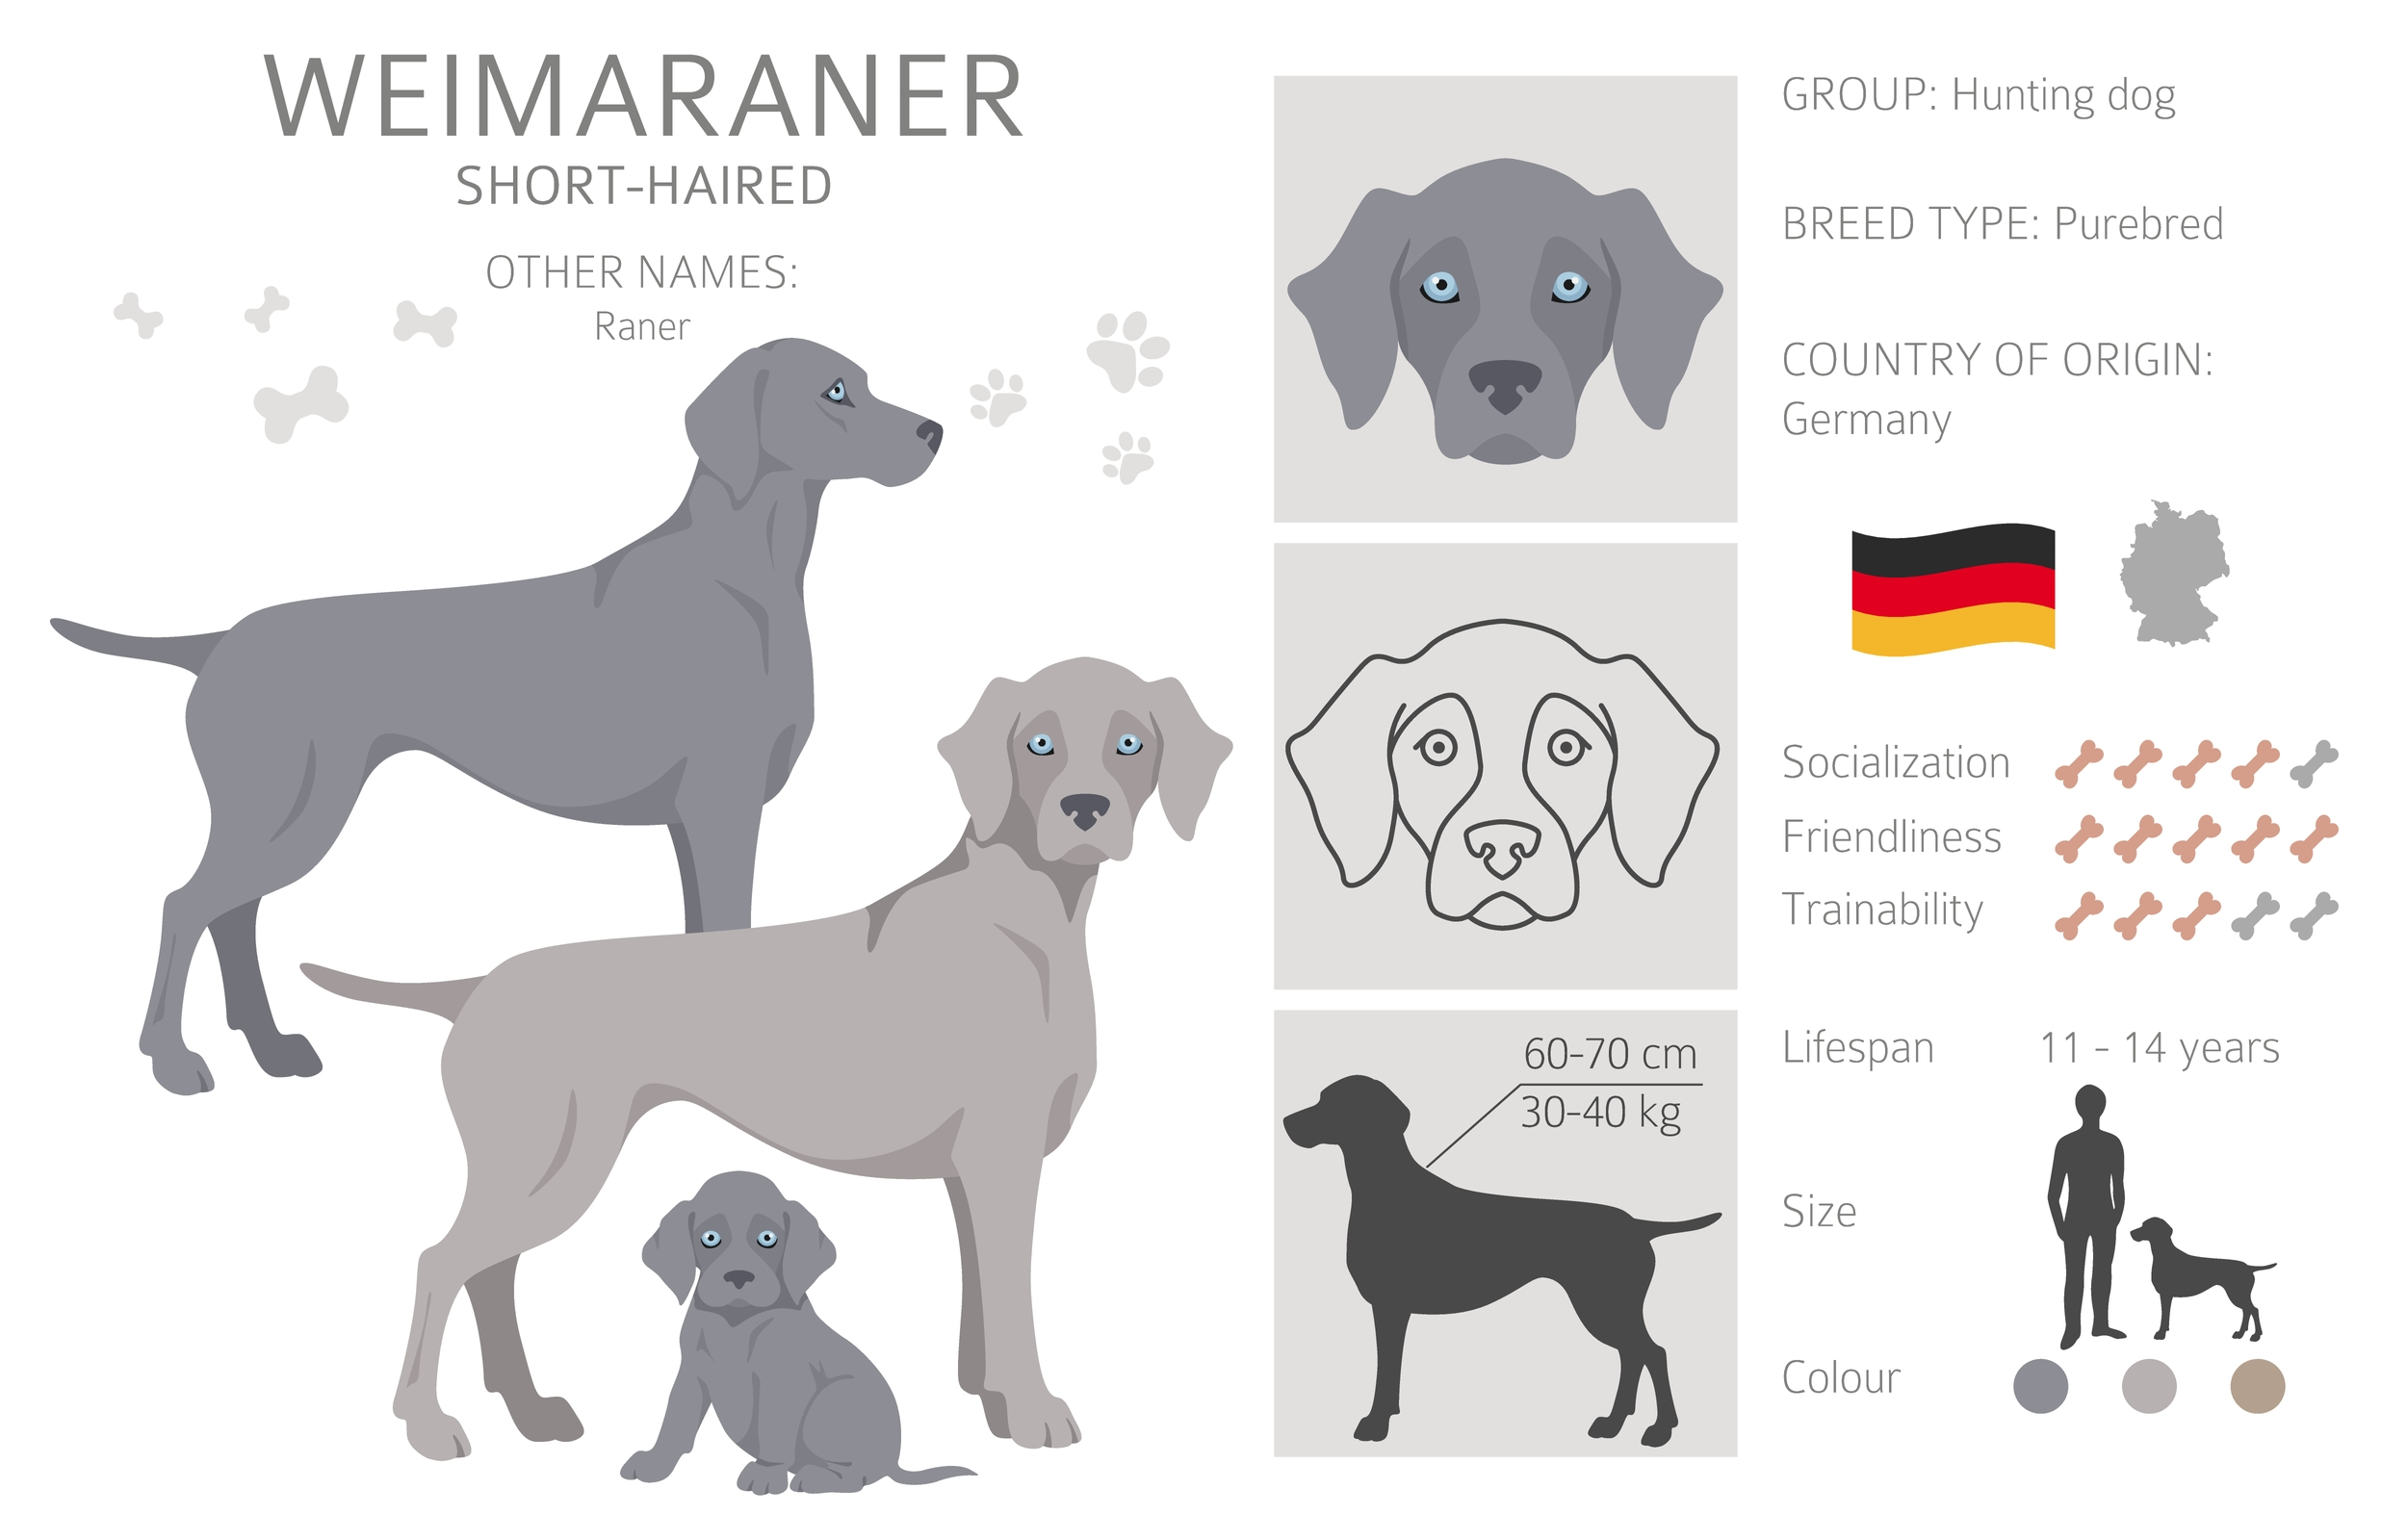 An infographic of a Weimaraner